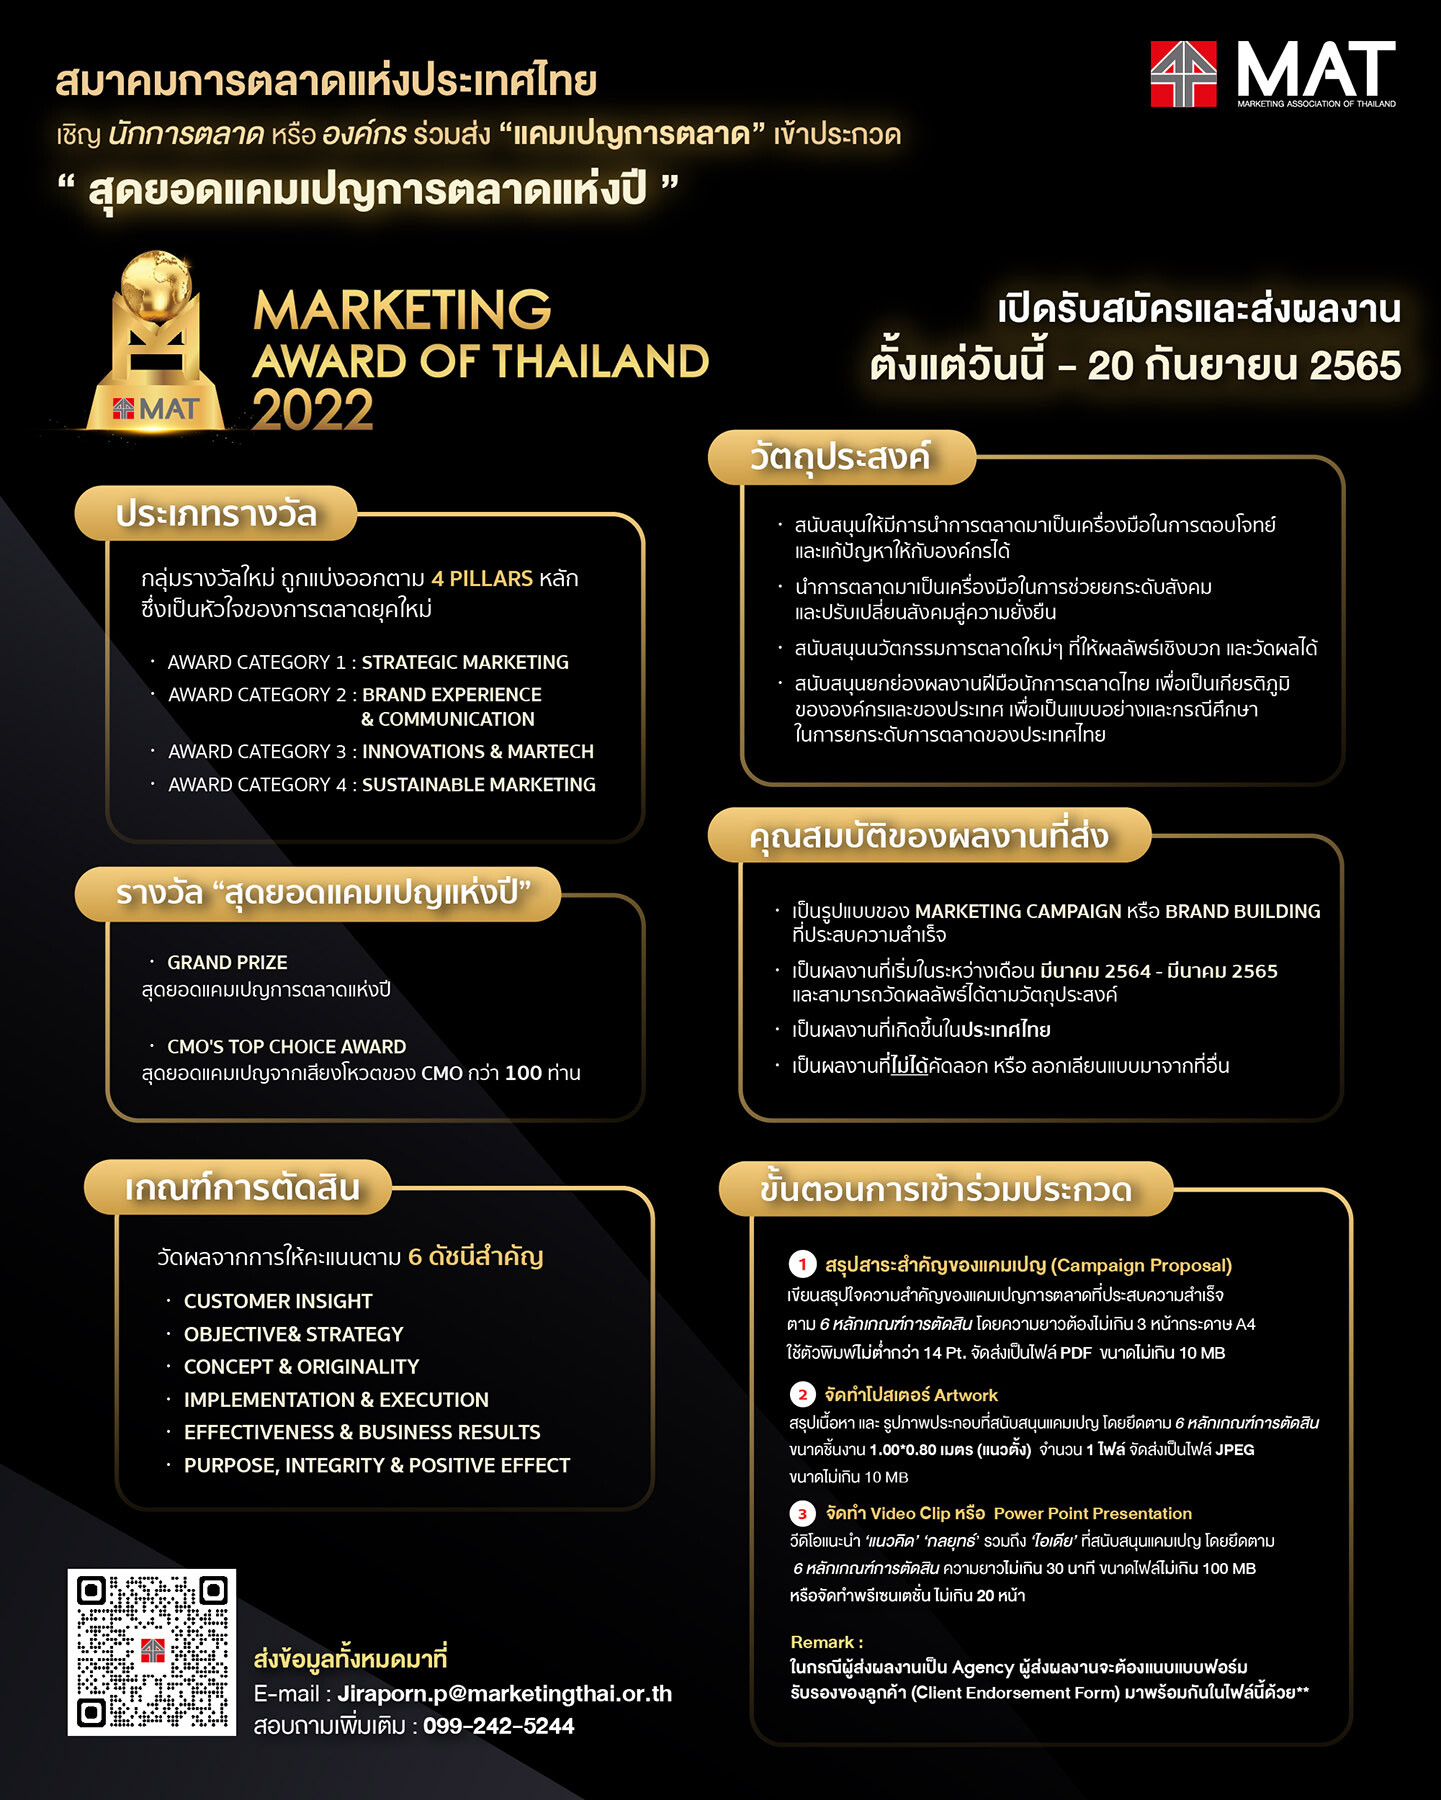 สมาคมการตลาด จัดประกวด "Marketing Award of Thailand" เฟ้นหาสุดยอดแคมเปญการตลาดแห่งปี รับสมัครถึง 20 ก.ย.นี้